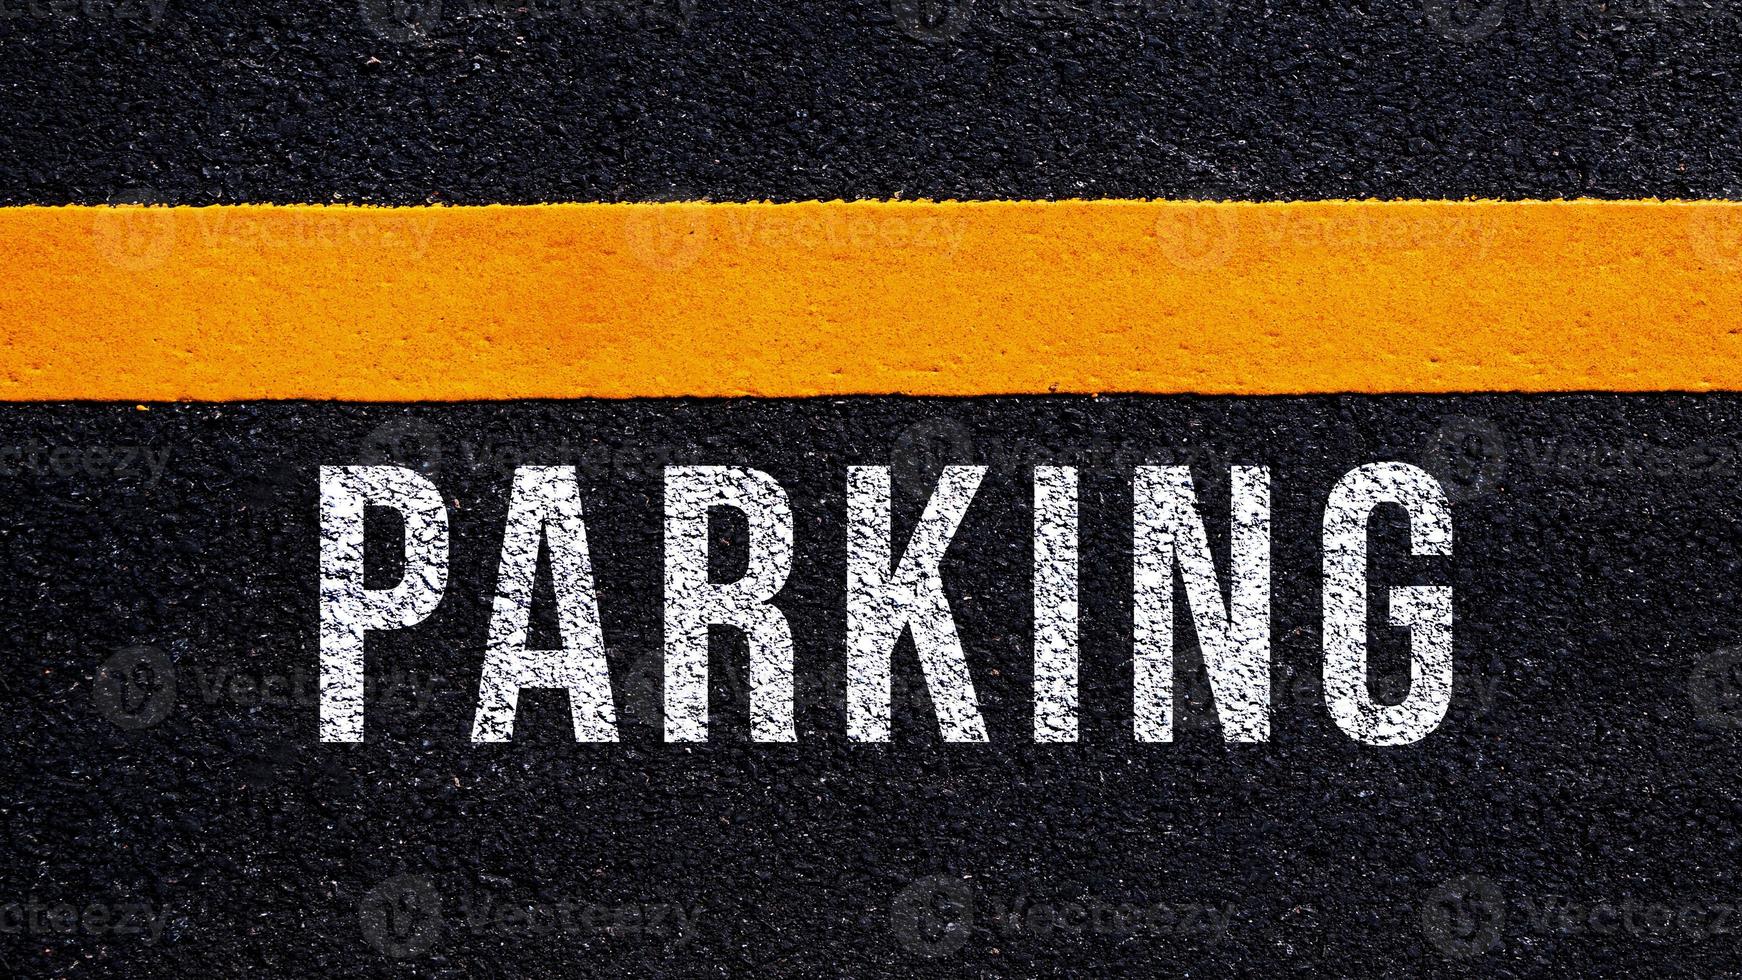 estacionamiento escrito y amarillo línea en el la carretera en medio de el asfalto camino, estacionamiento palabra en calle foto